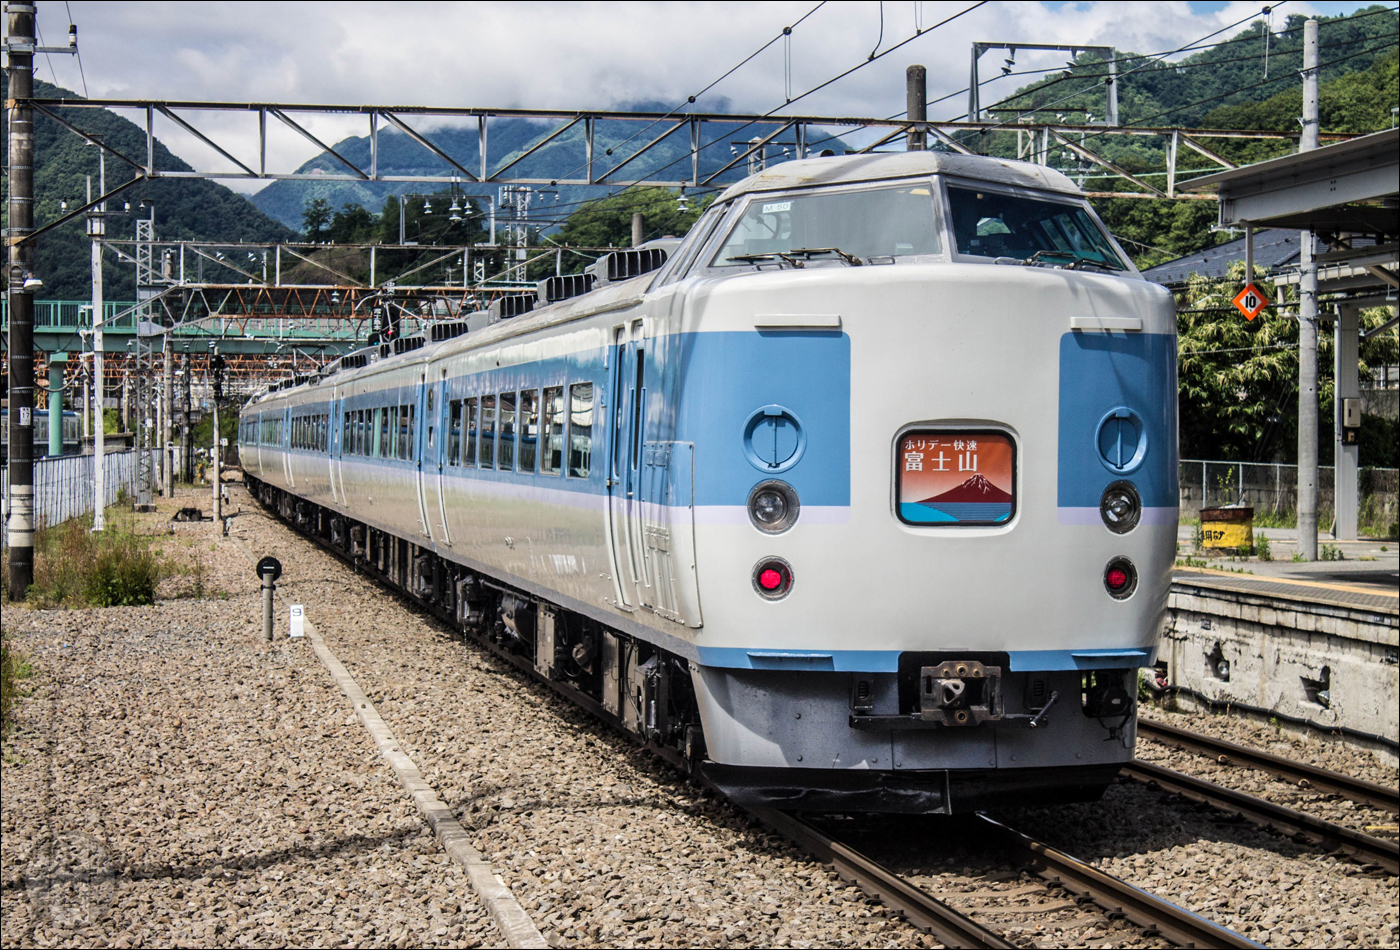 Az egyik utolsó 189-es sorozatú motorvonat egy Shinjuku - Kawaguchiko viszonylatú „Holiday Fujisan” sebesvonatként 2015 júniusában. Az „Azusa” festésű járműnek a tulajdonos JR East 2018 januárjában mondott búcsút és egyetlen kocsi sem maradt fenn.